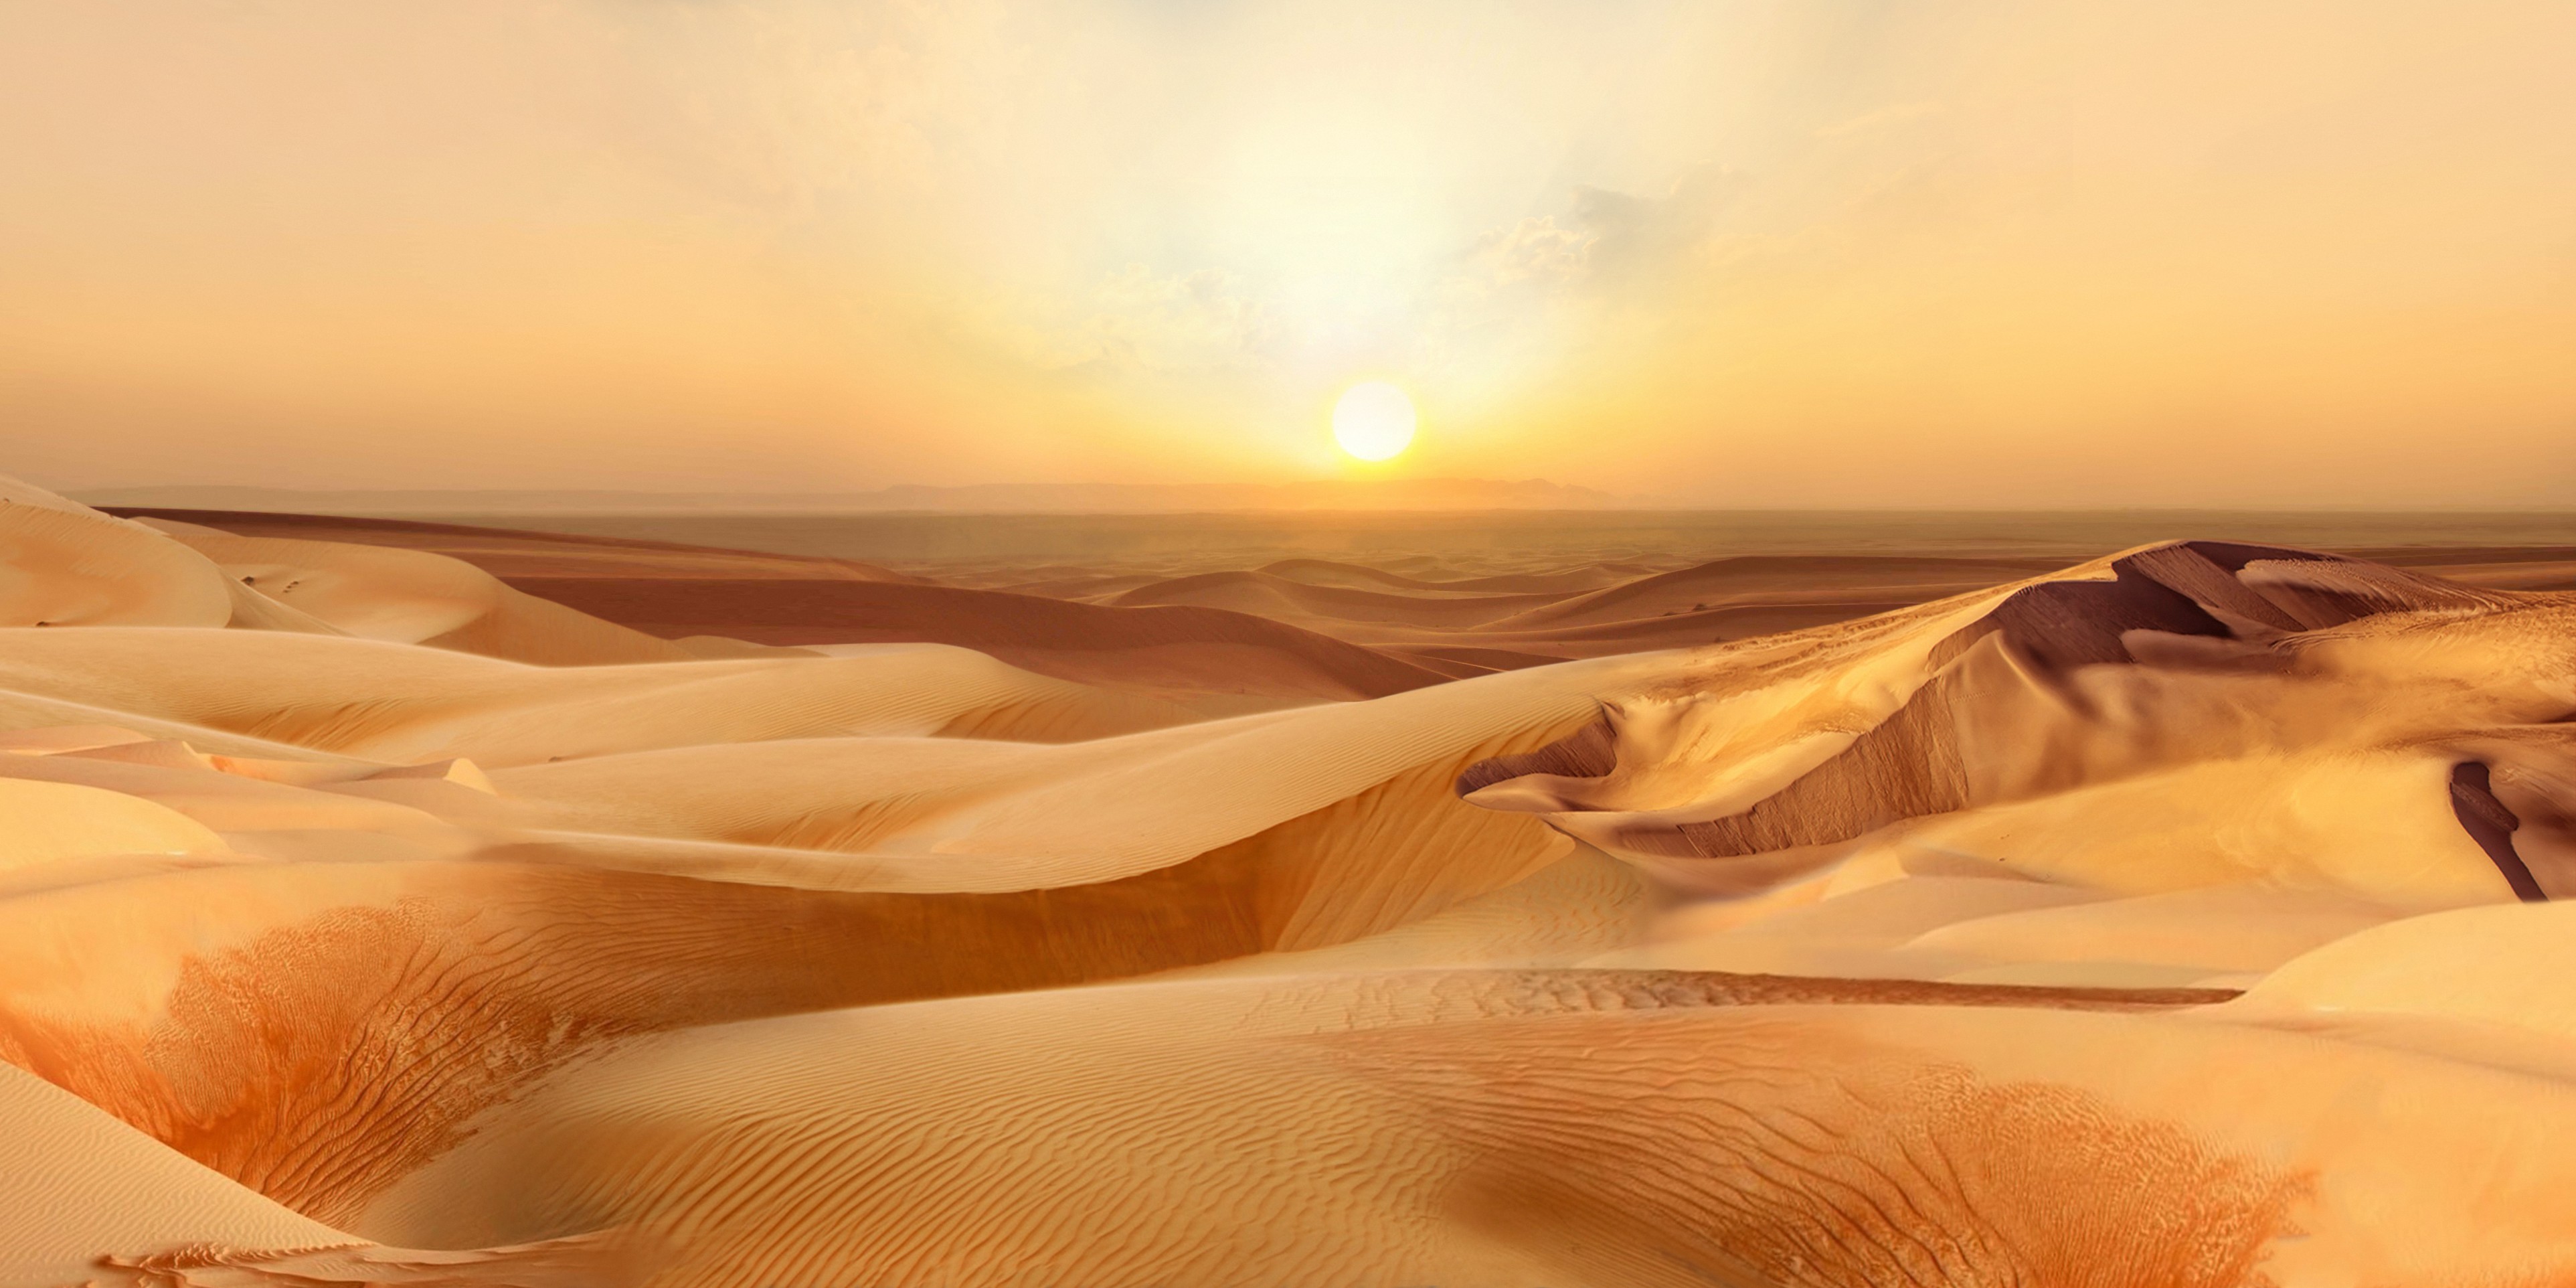 الكثبان الرملية في الصحراء المغربية